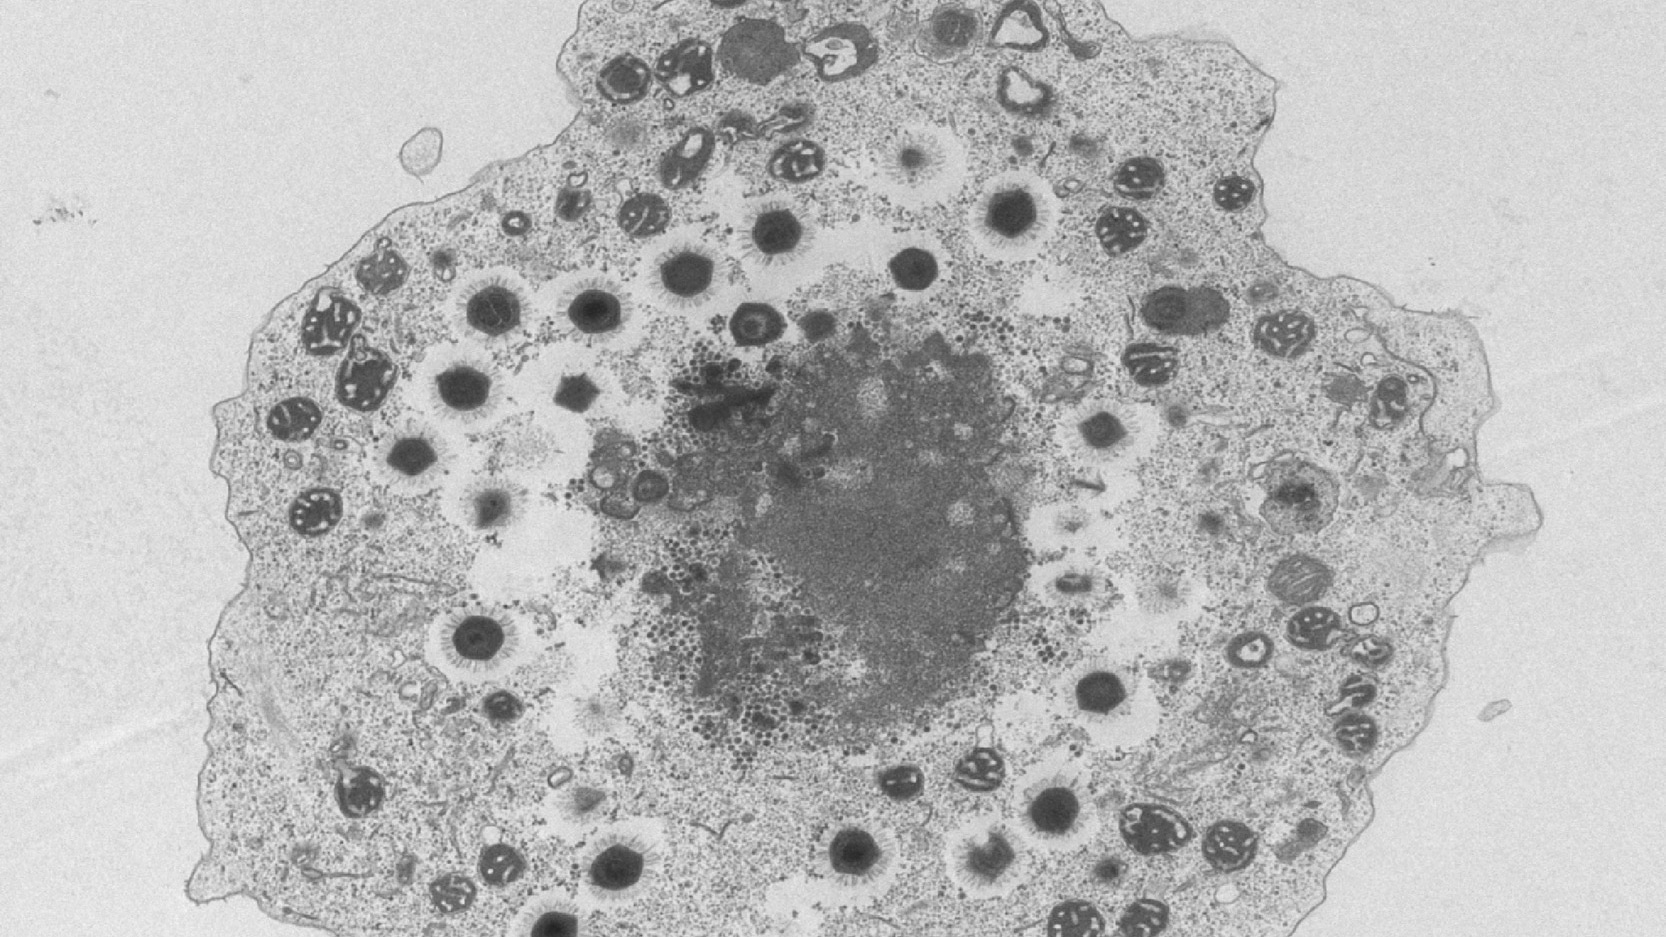 Virófagos: cuando los virus parasitan a otros virus